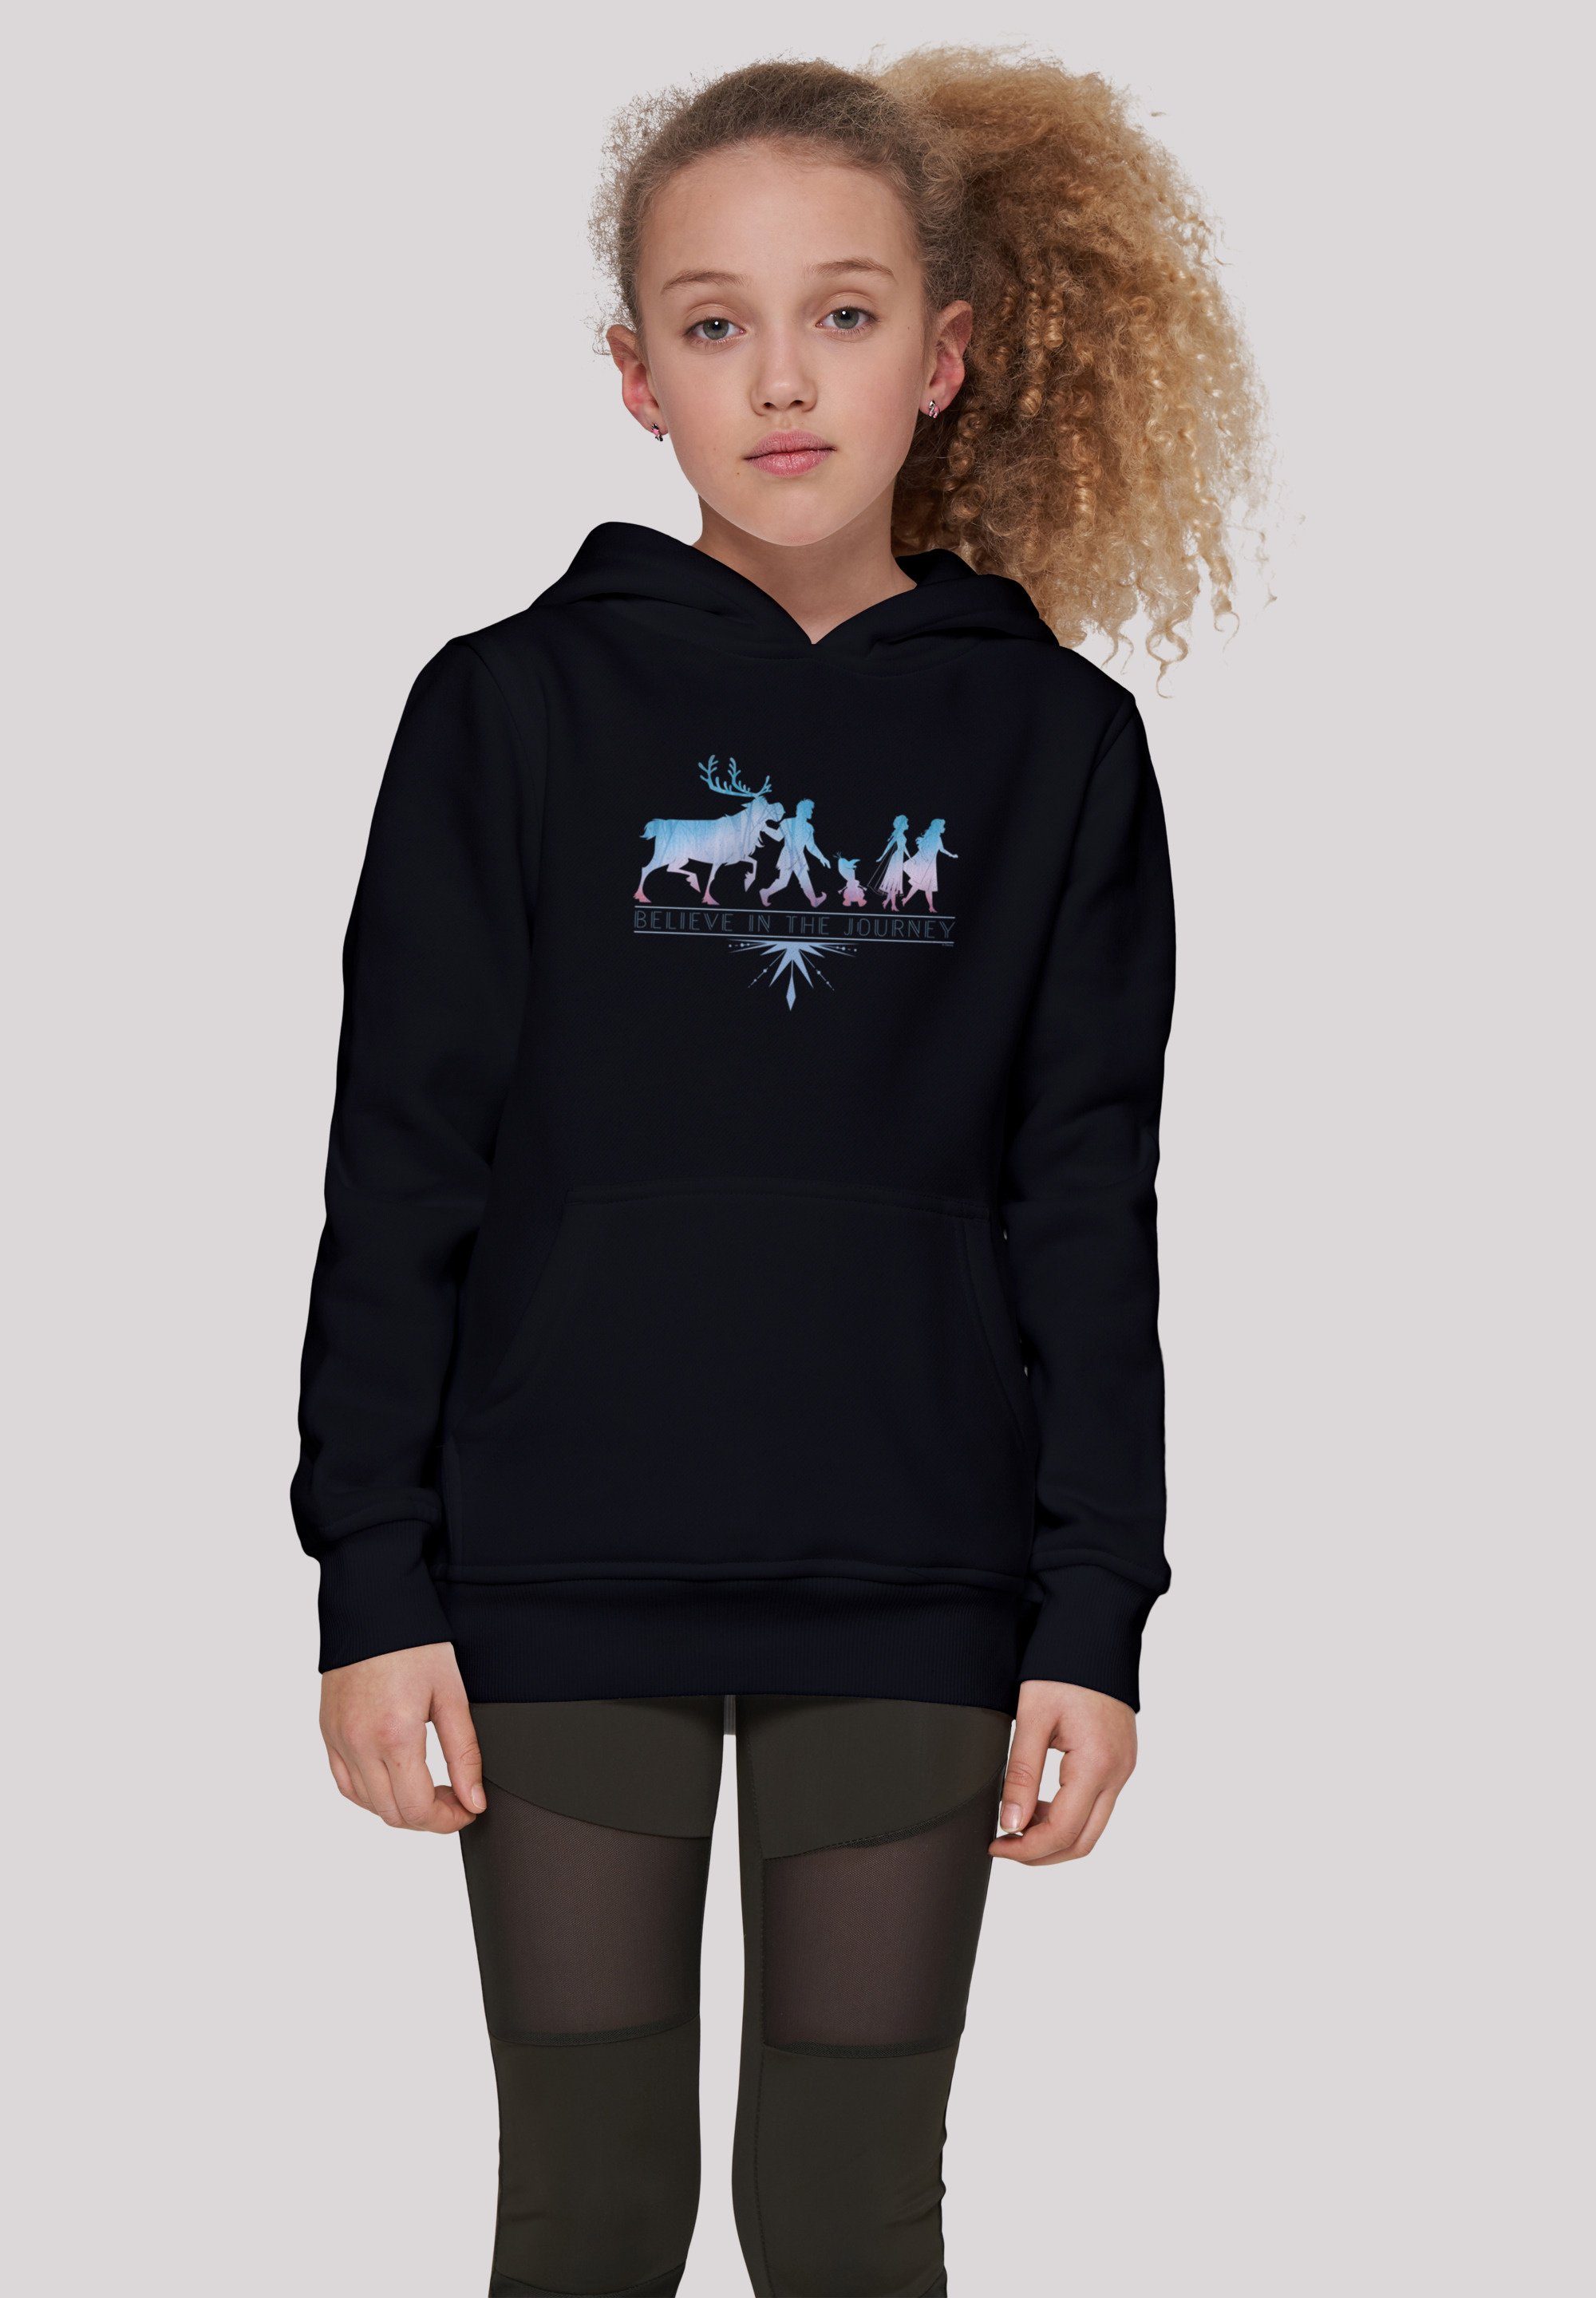 schwarz 2 Sweatshirt In Frozen Journey Merch,Jungen,Mädchen,Bedruckt Believe Disney The F4NT4STIC Kinder,Premium Unisex